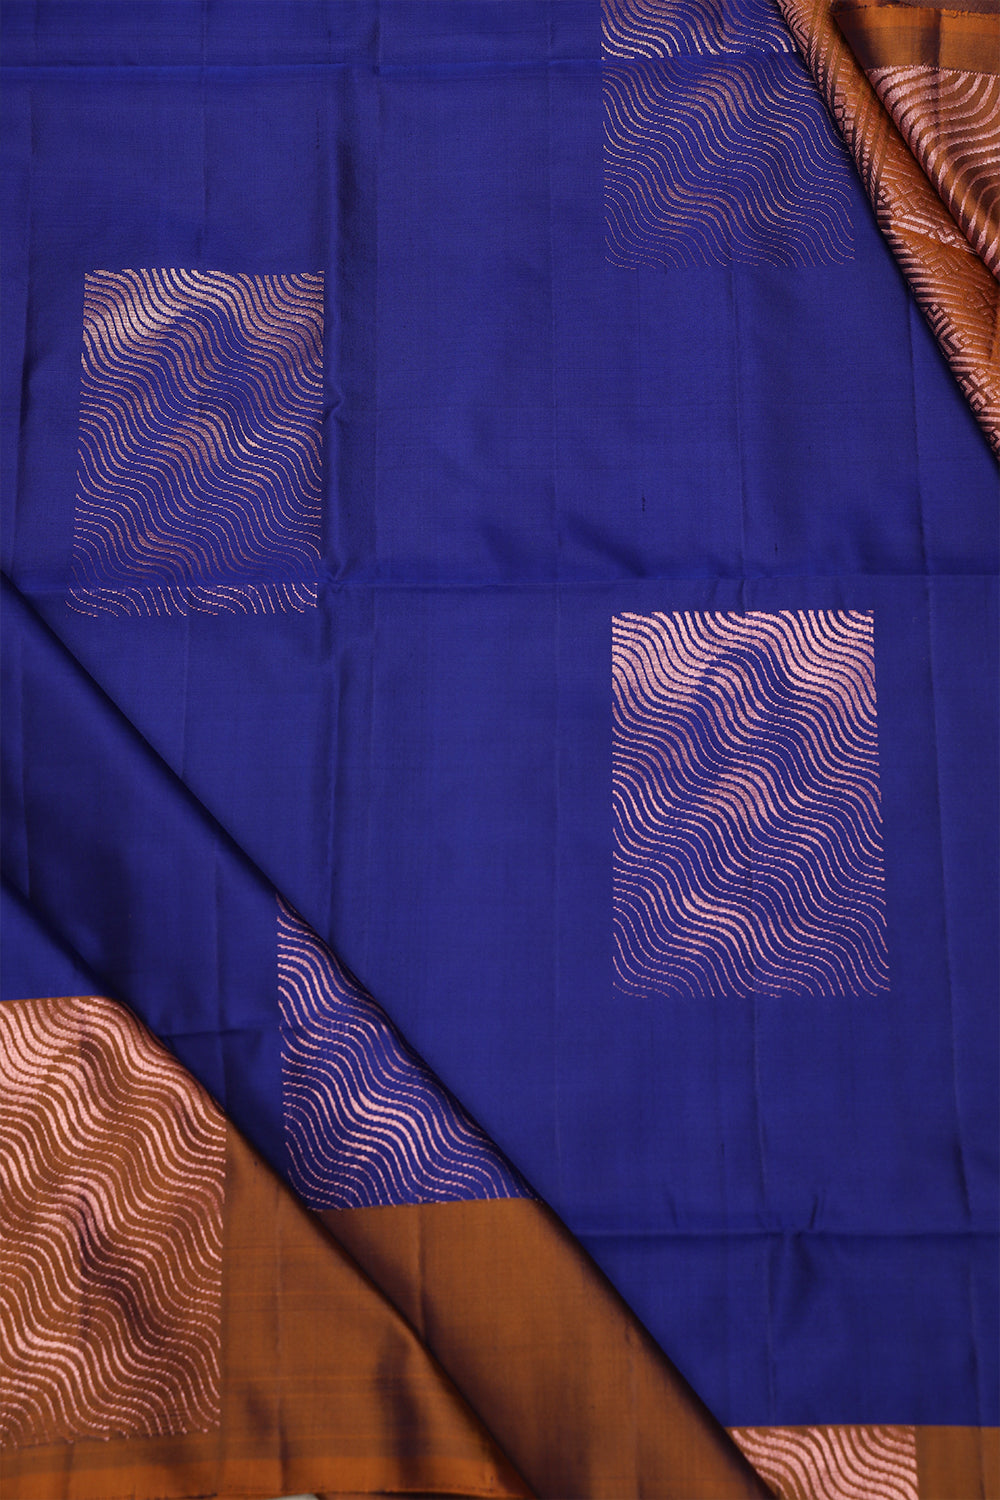 Royal blue colour soft silk saree